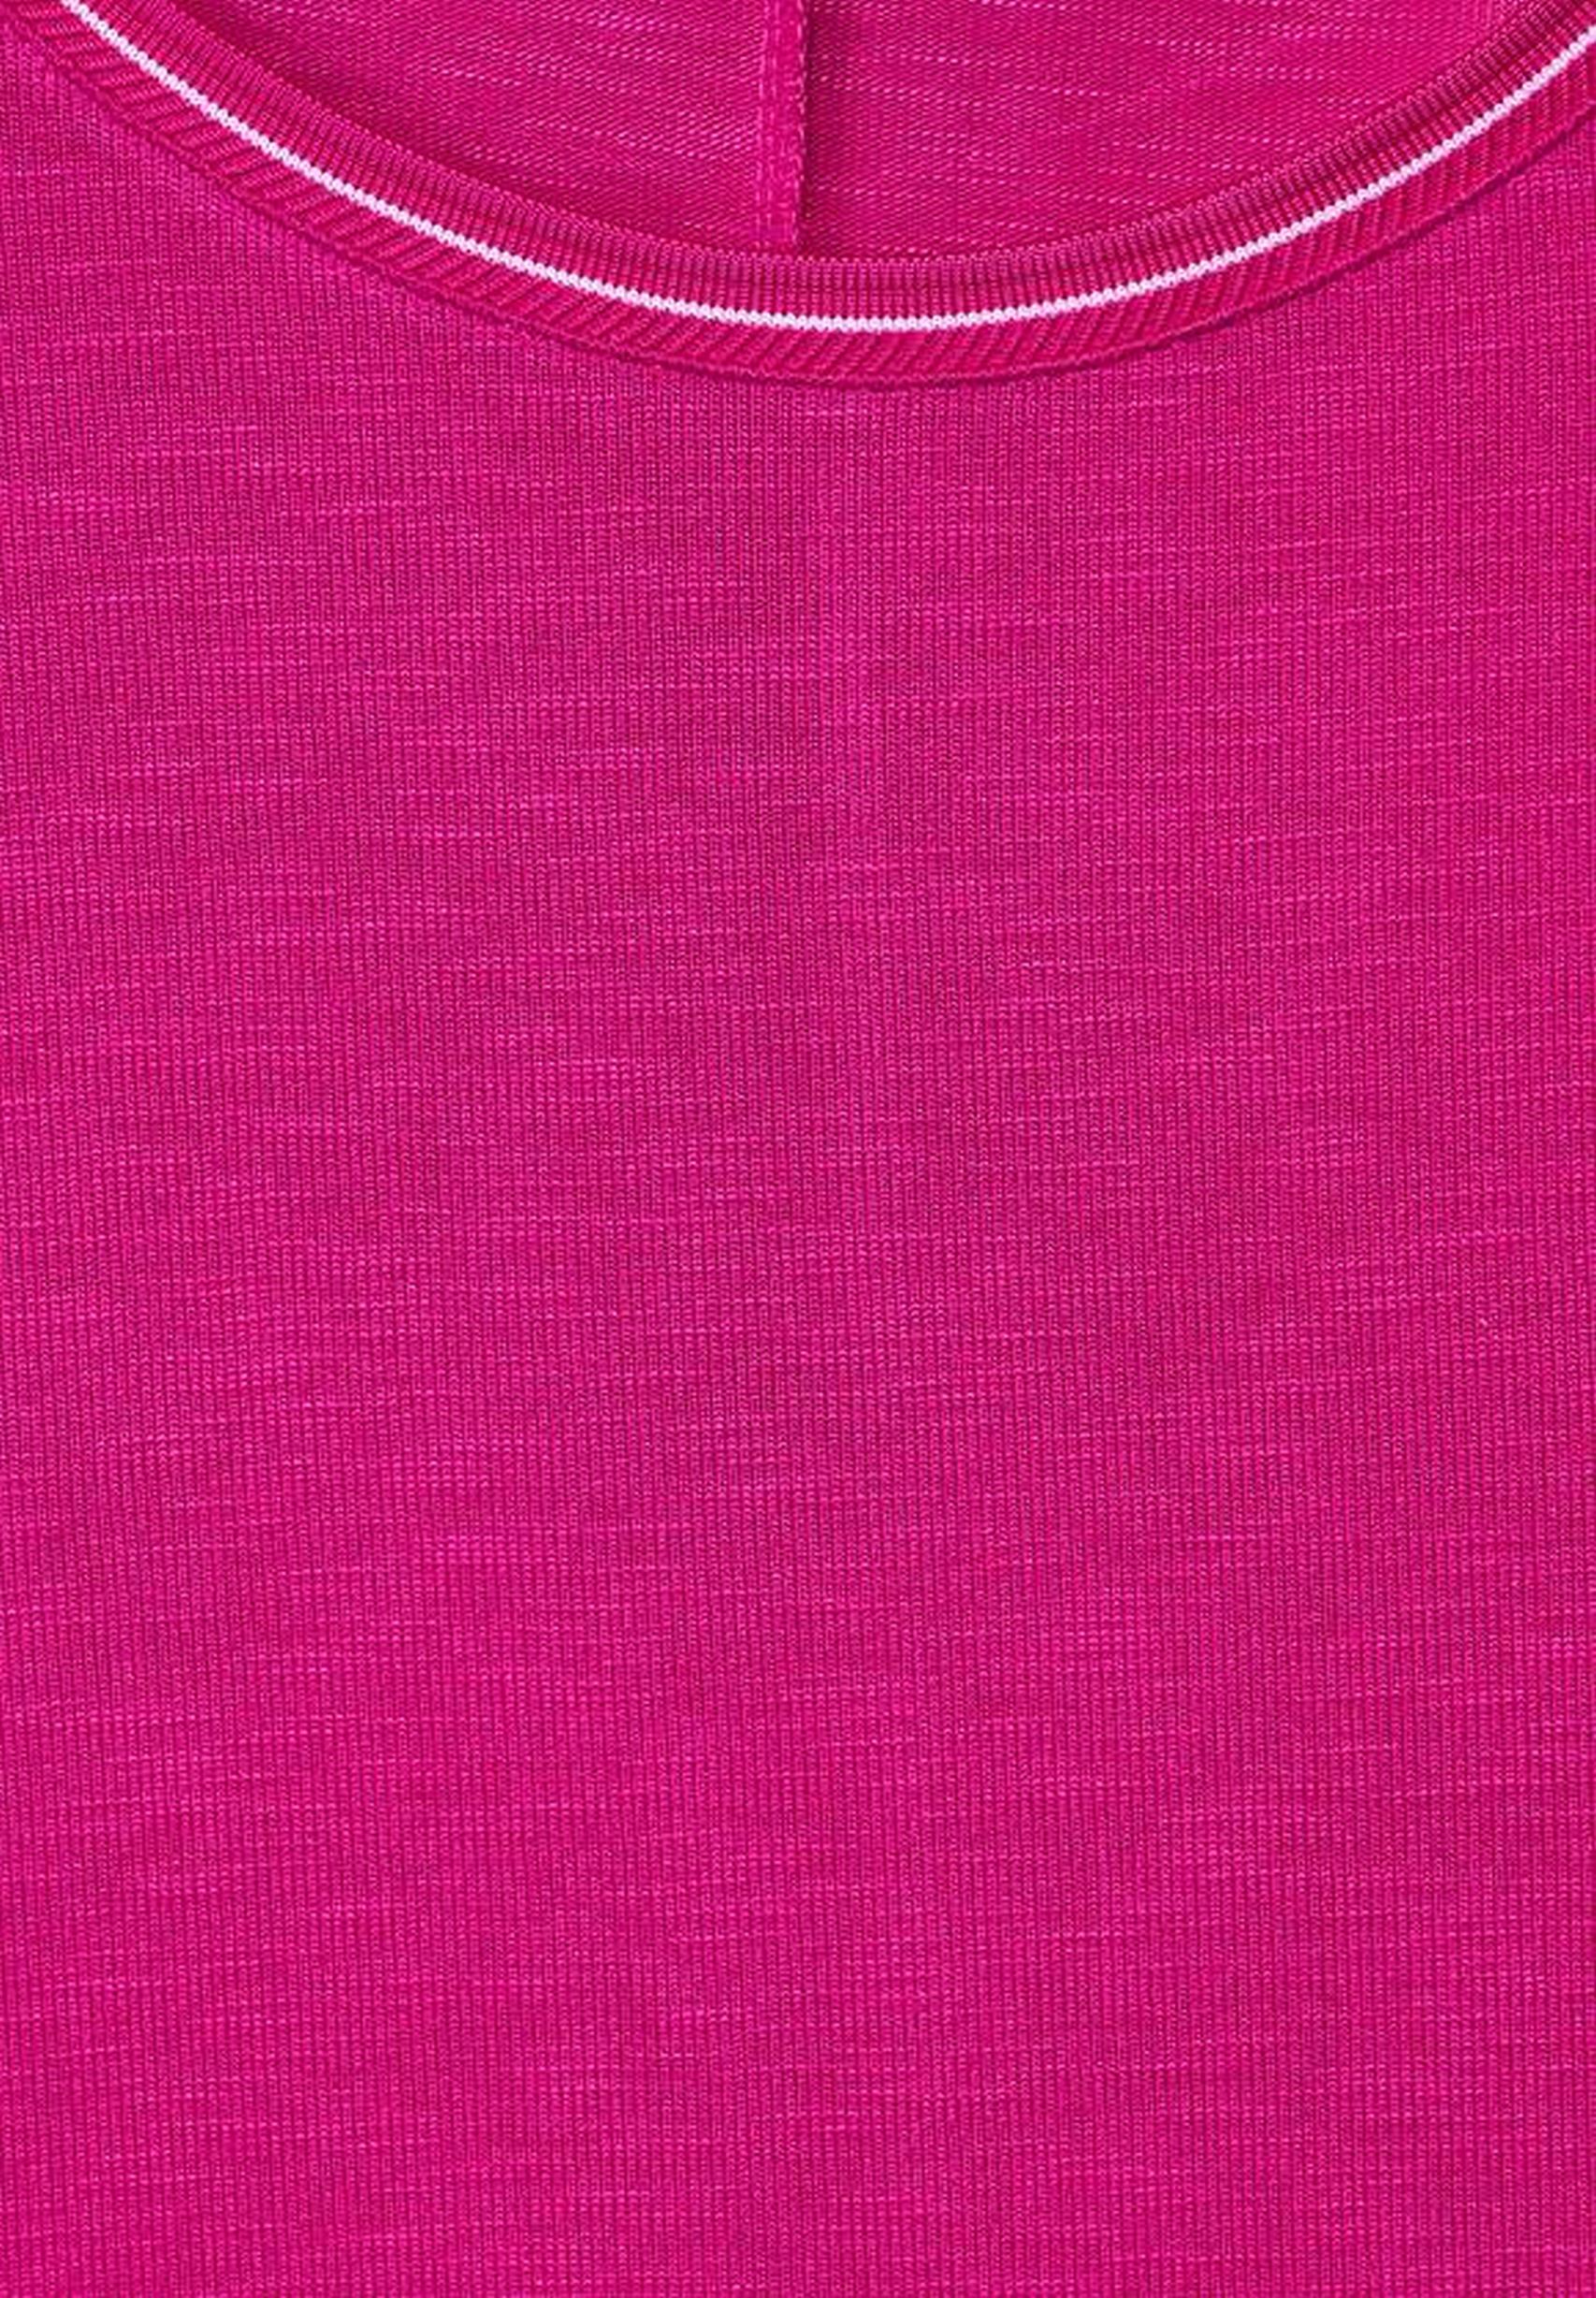 Modisches Strickshirt aus der Kollektion von Street One in pink